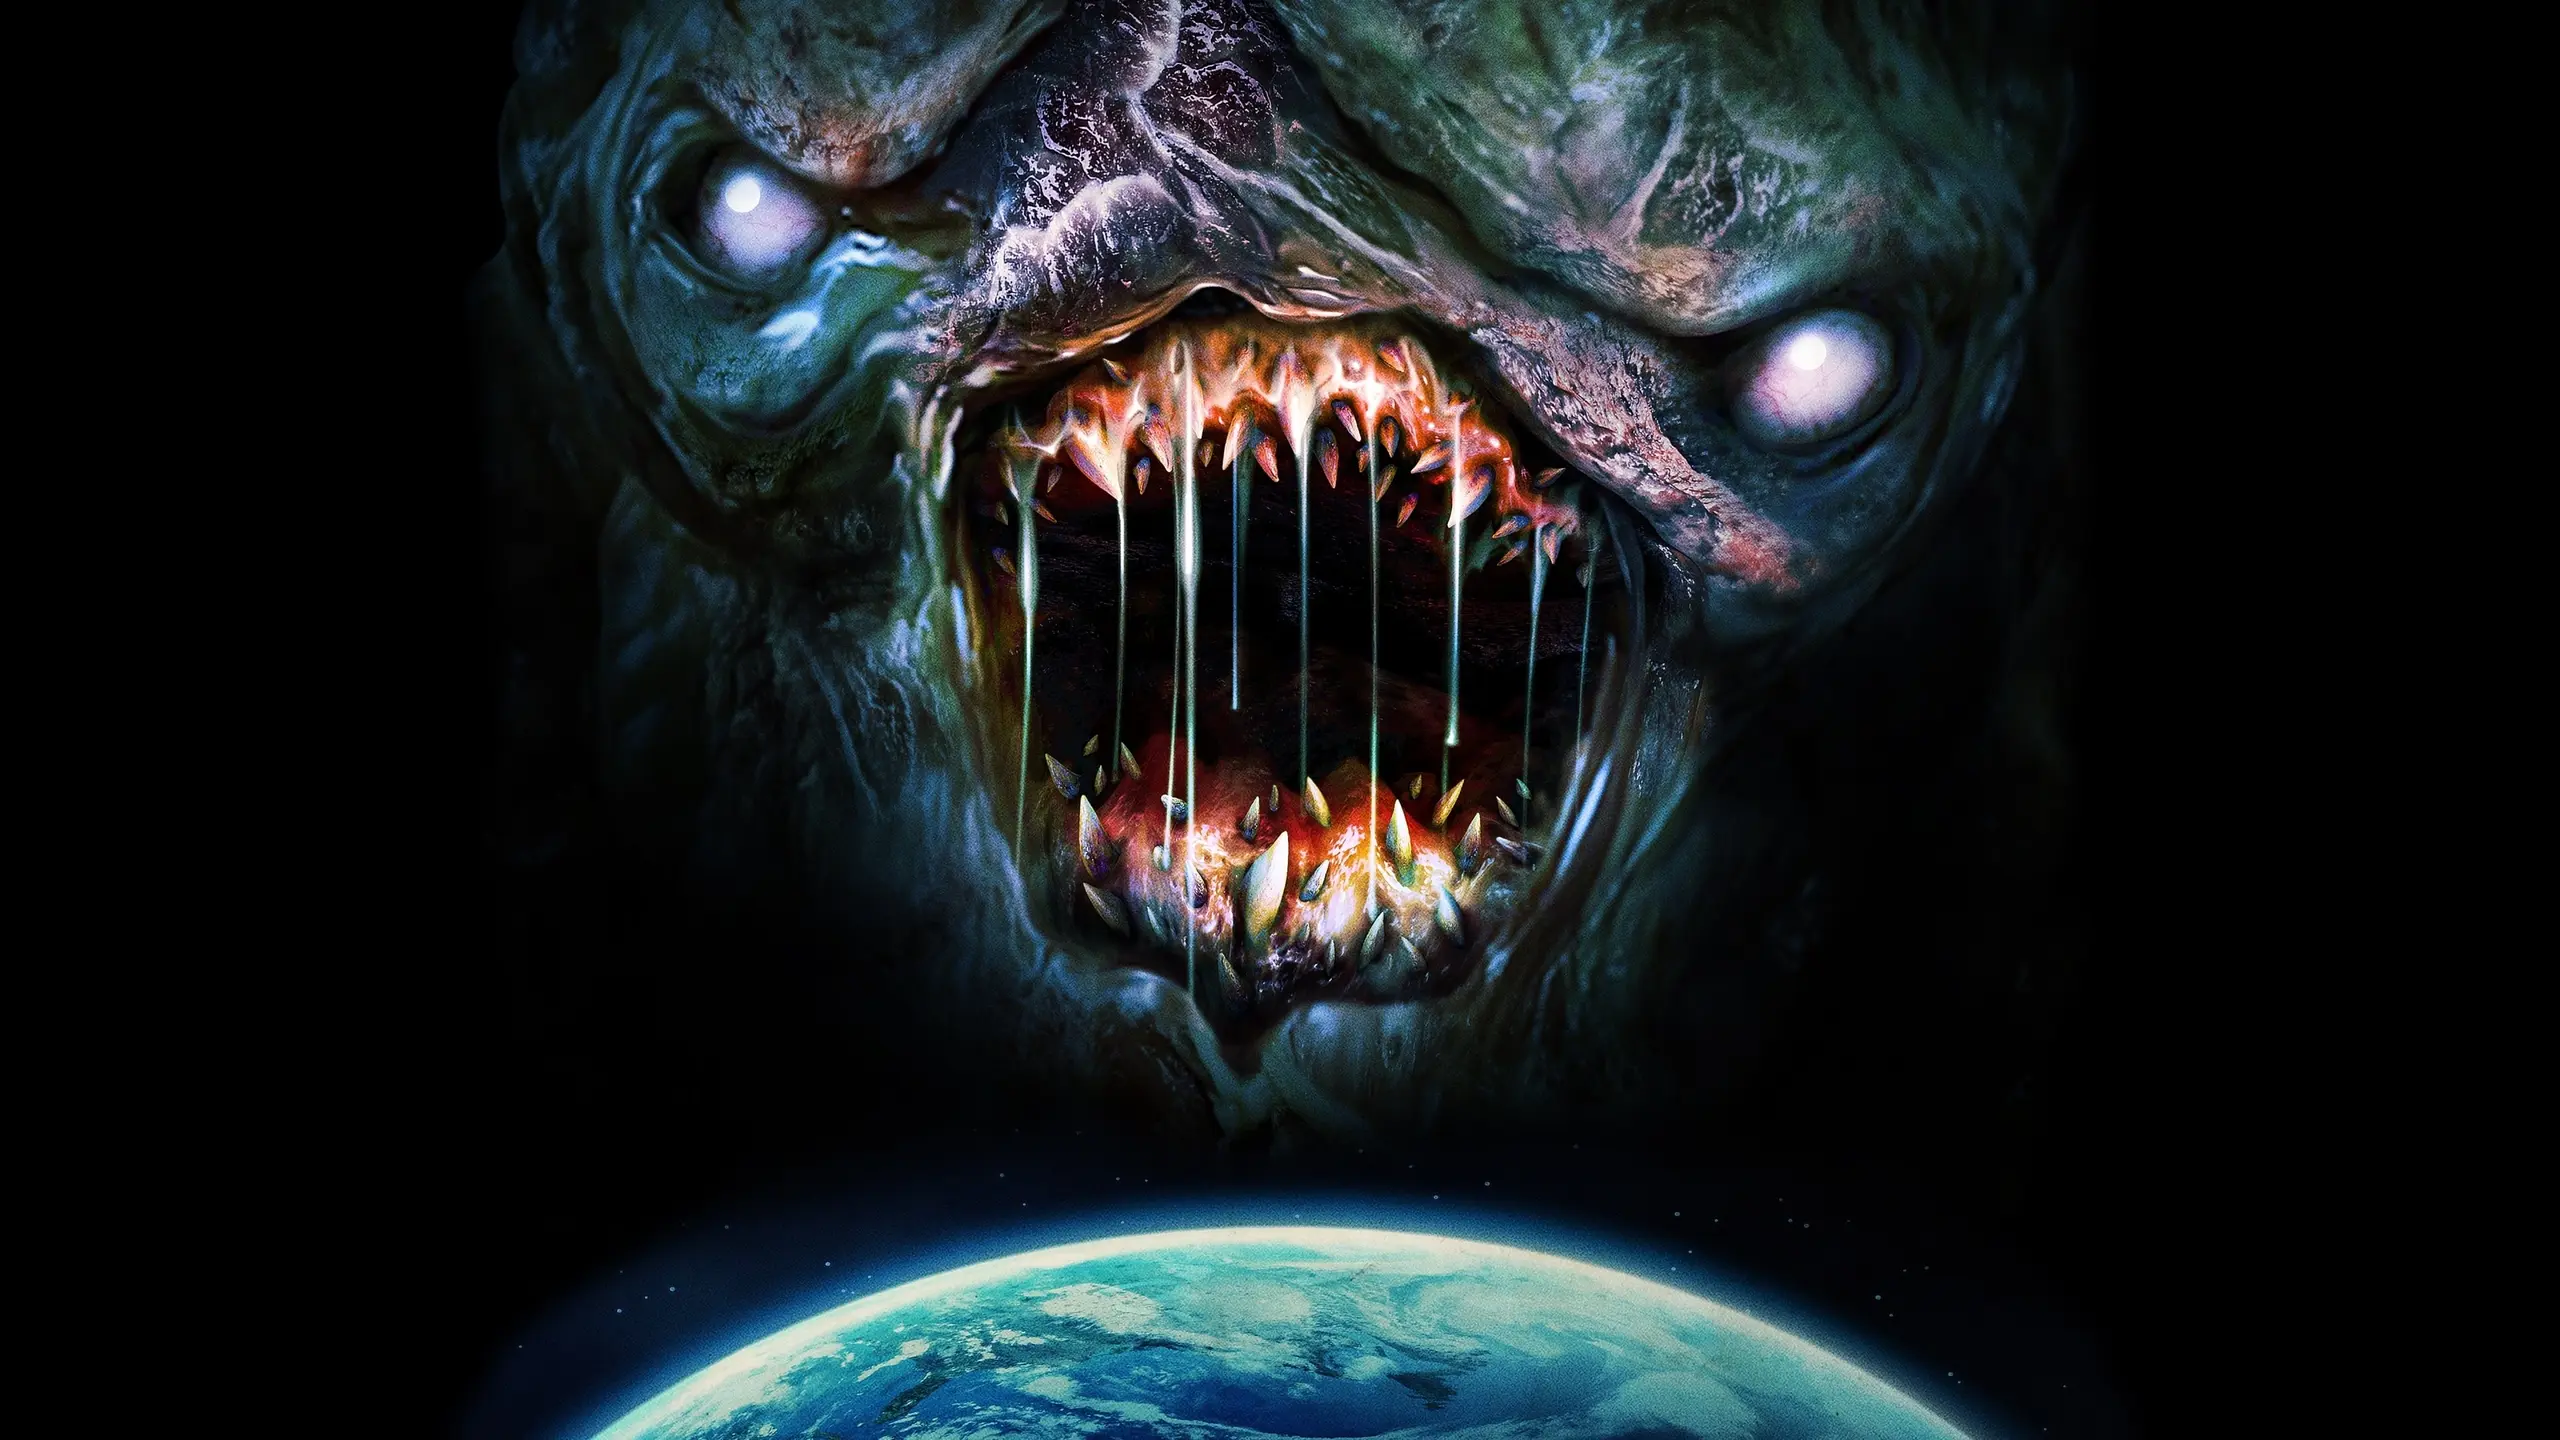 Monster Hunters – Die Alienjäger